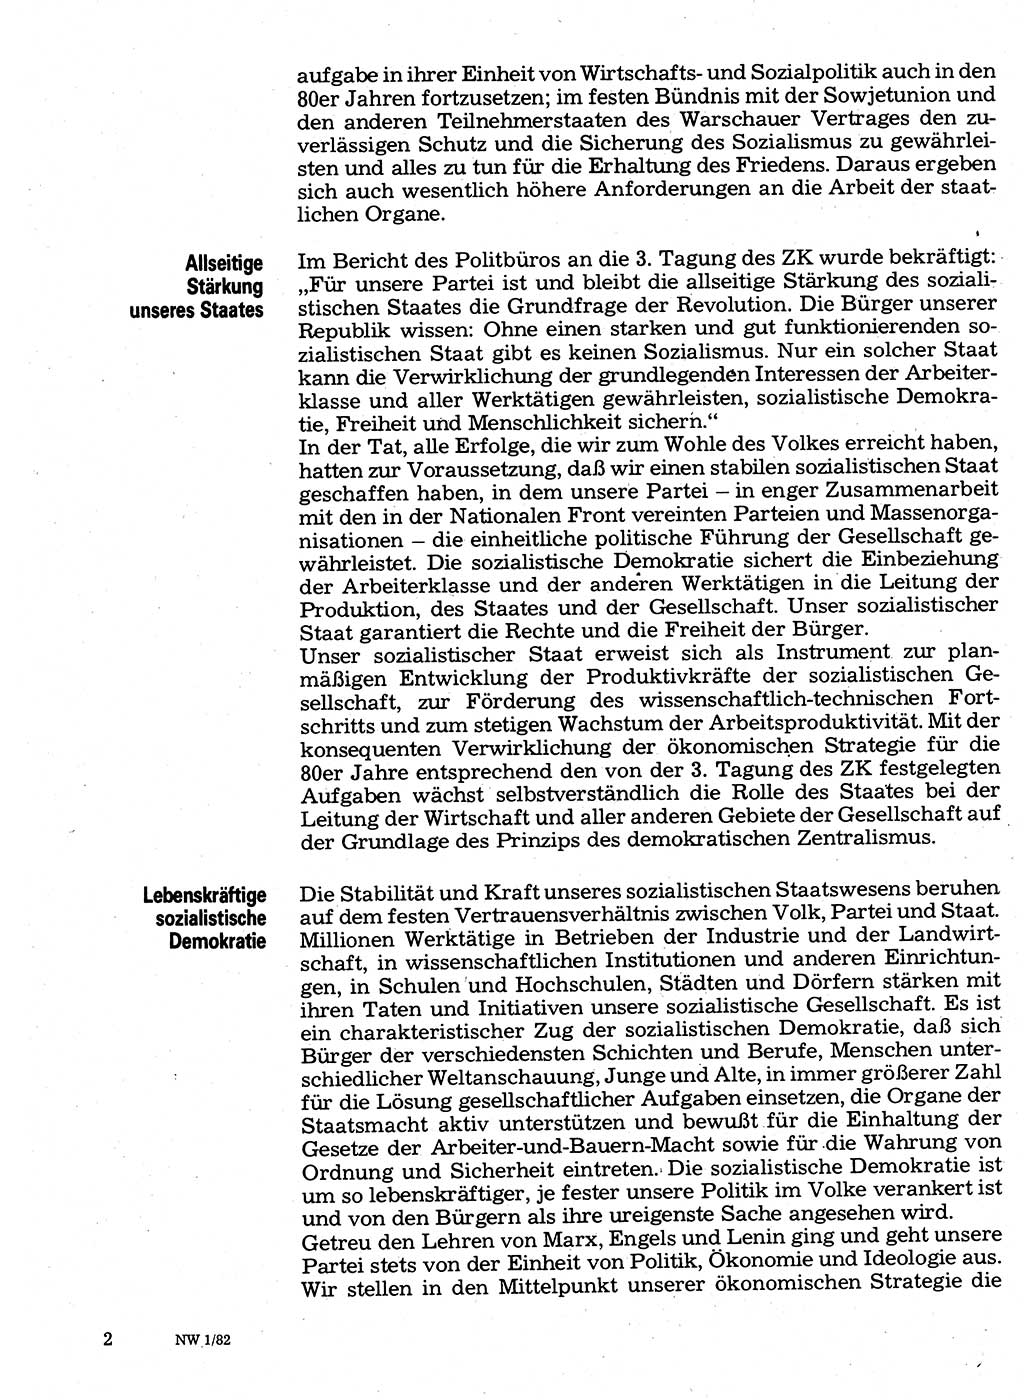 Neuer Weg (NW), Organ des Zentralkomitees (ZK) der SED (Sozialistische Einheitspartei Deutschlands) für Fragen des Parteilebens, 37. Jahrgang [Deutsche Demokratische Republik (DDR)] 1982, Seite 2 (NW ZK SED DDR 1982, S. 2)